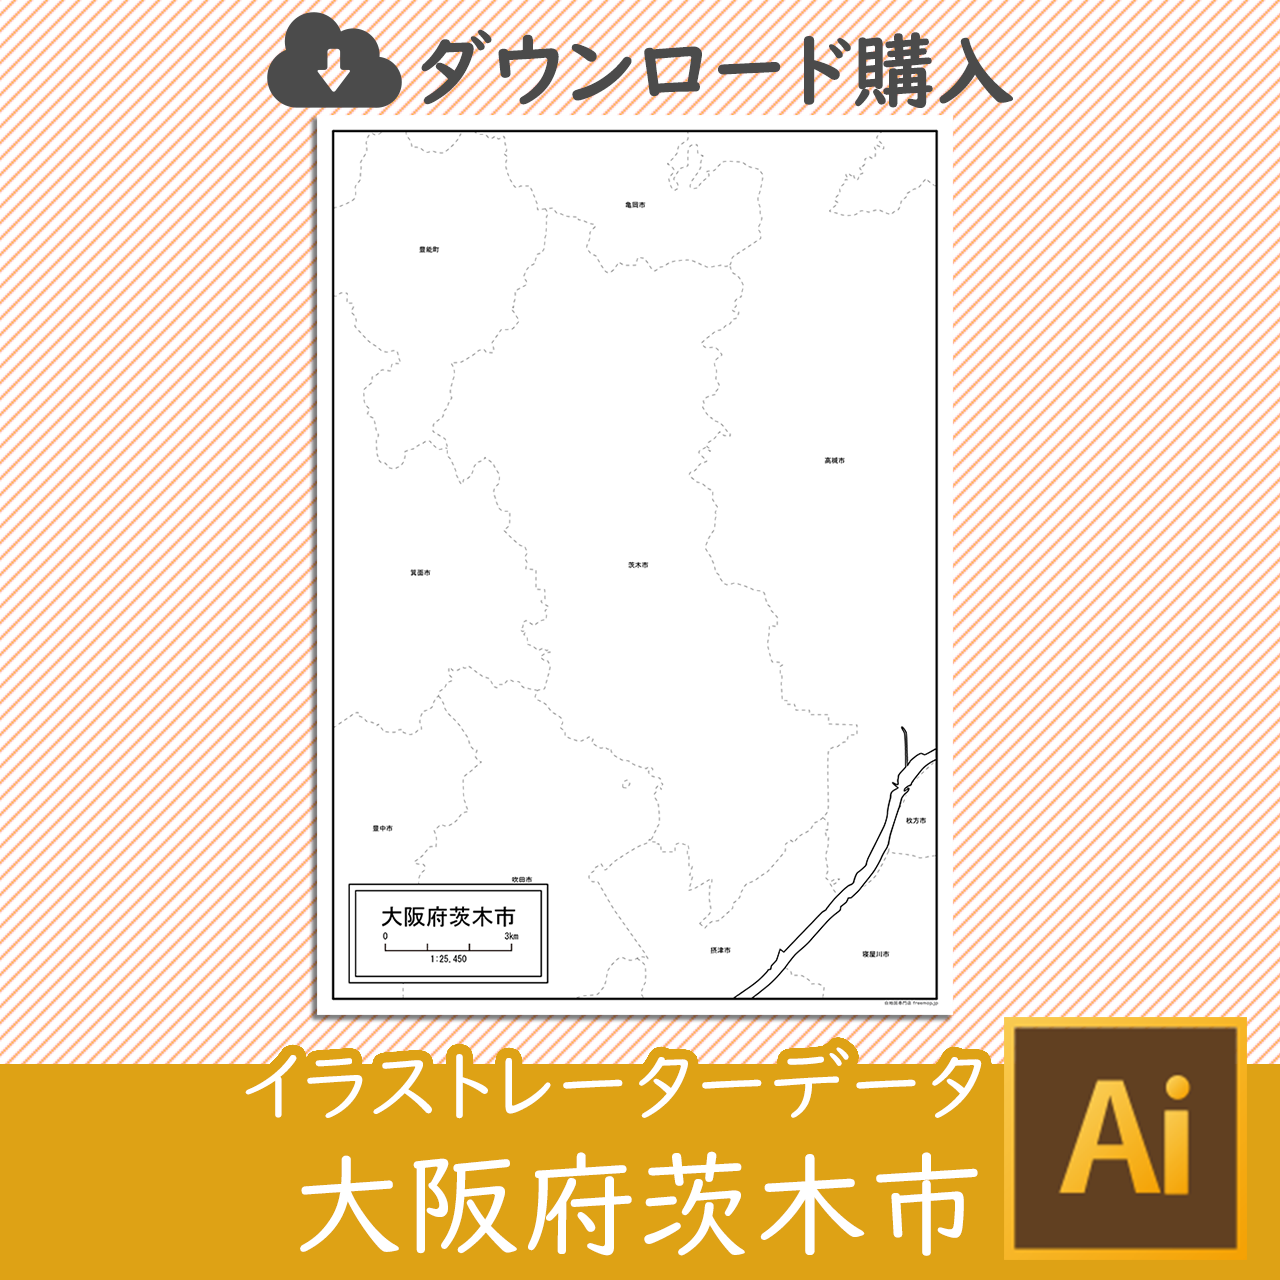 茨木市のaiデータのサムネイル画像